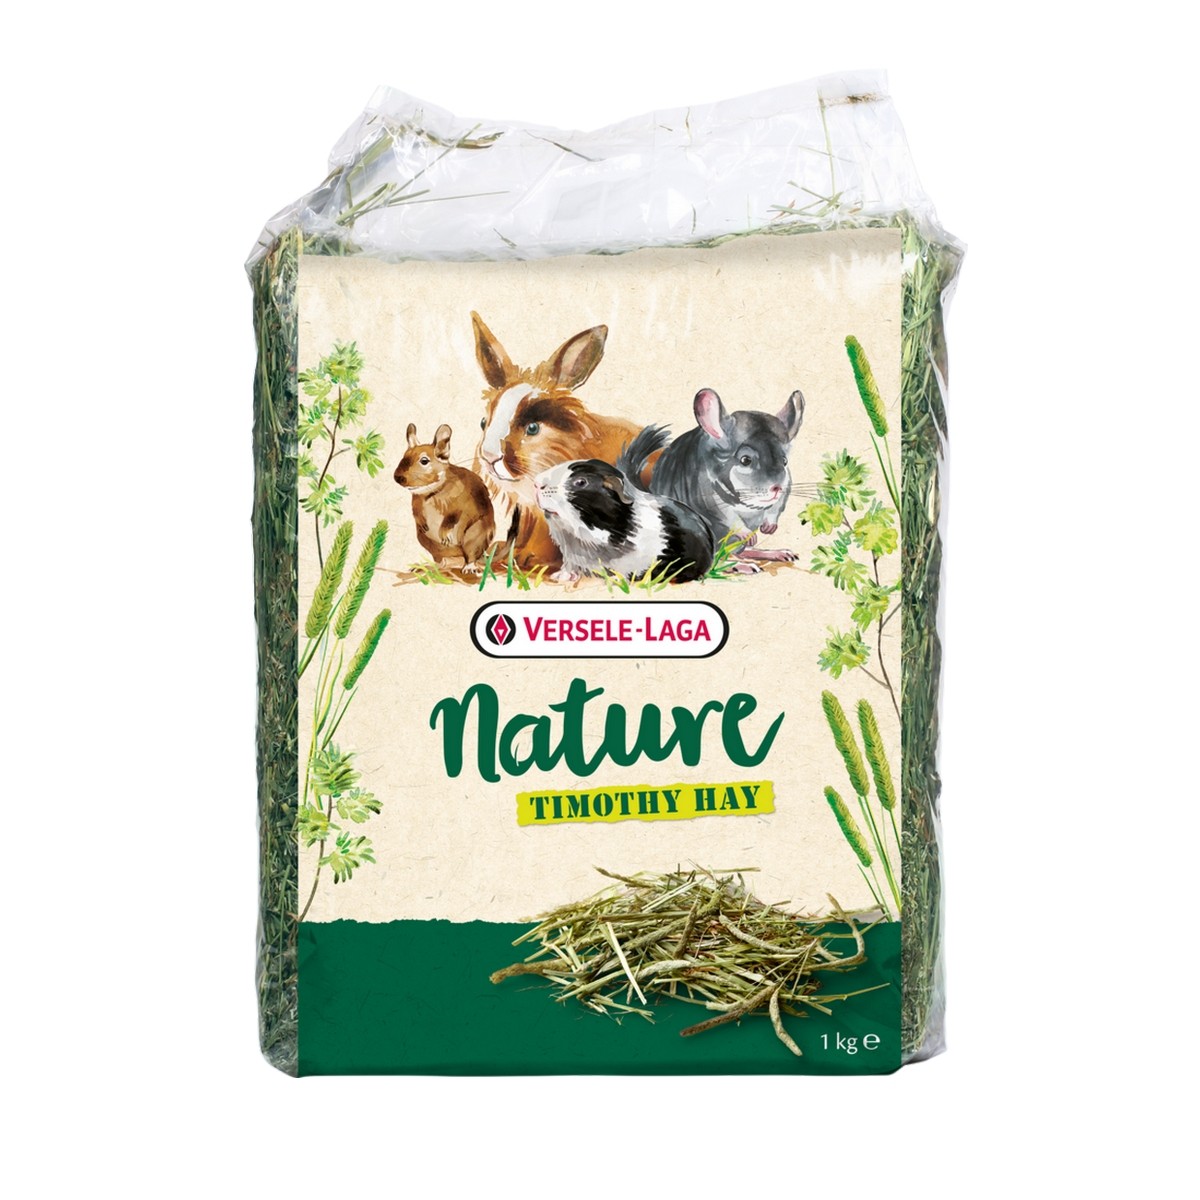 Crispy Muesli - Rabbits 1kg - Mélange de qualité, riche en fibres